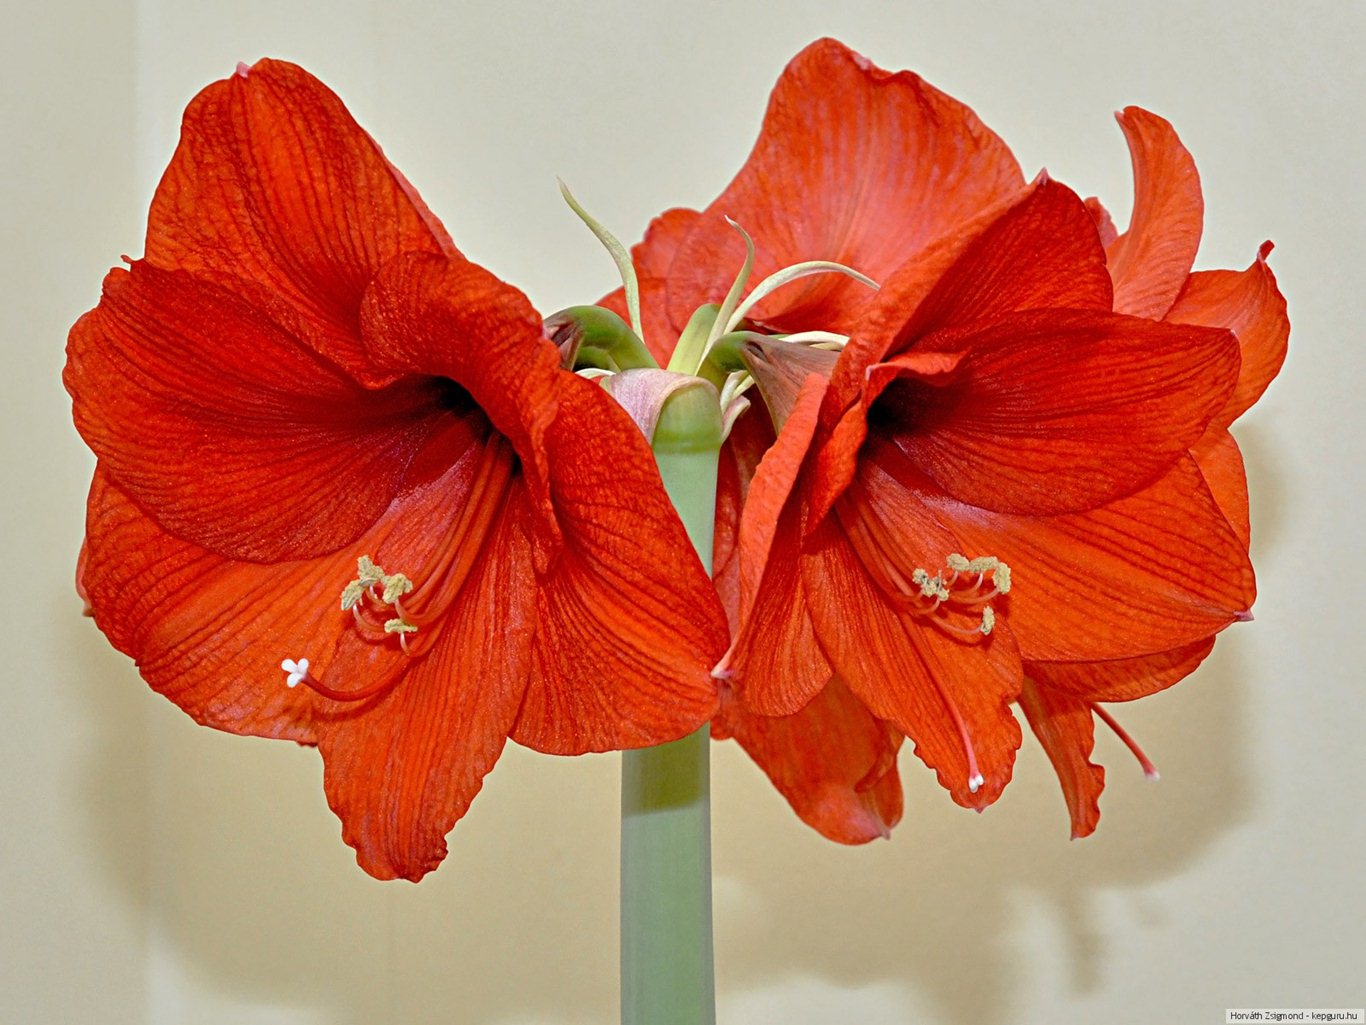 Amaryllis Çiçeği Masaüstü Resimleri En Güzel Amaryllis Çiçeği Resimleri- Resim 1839